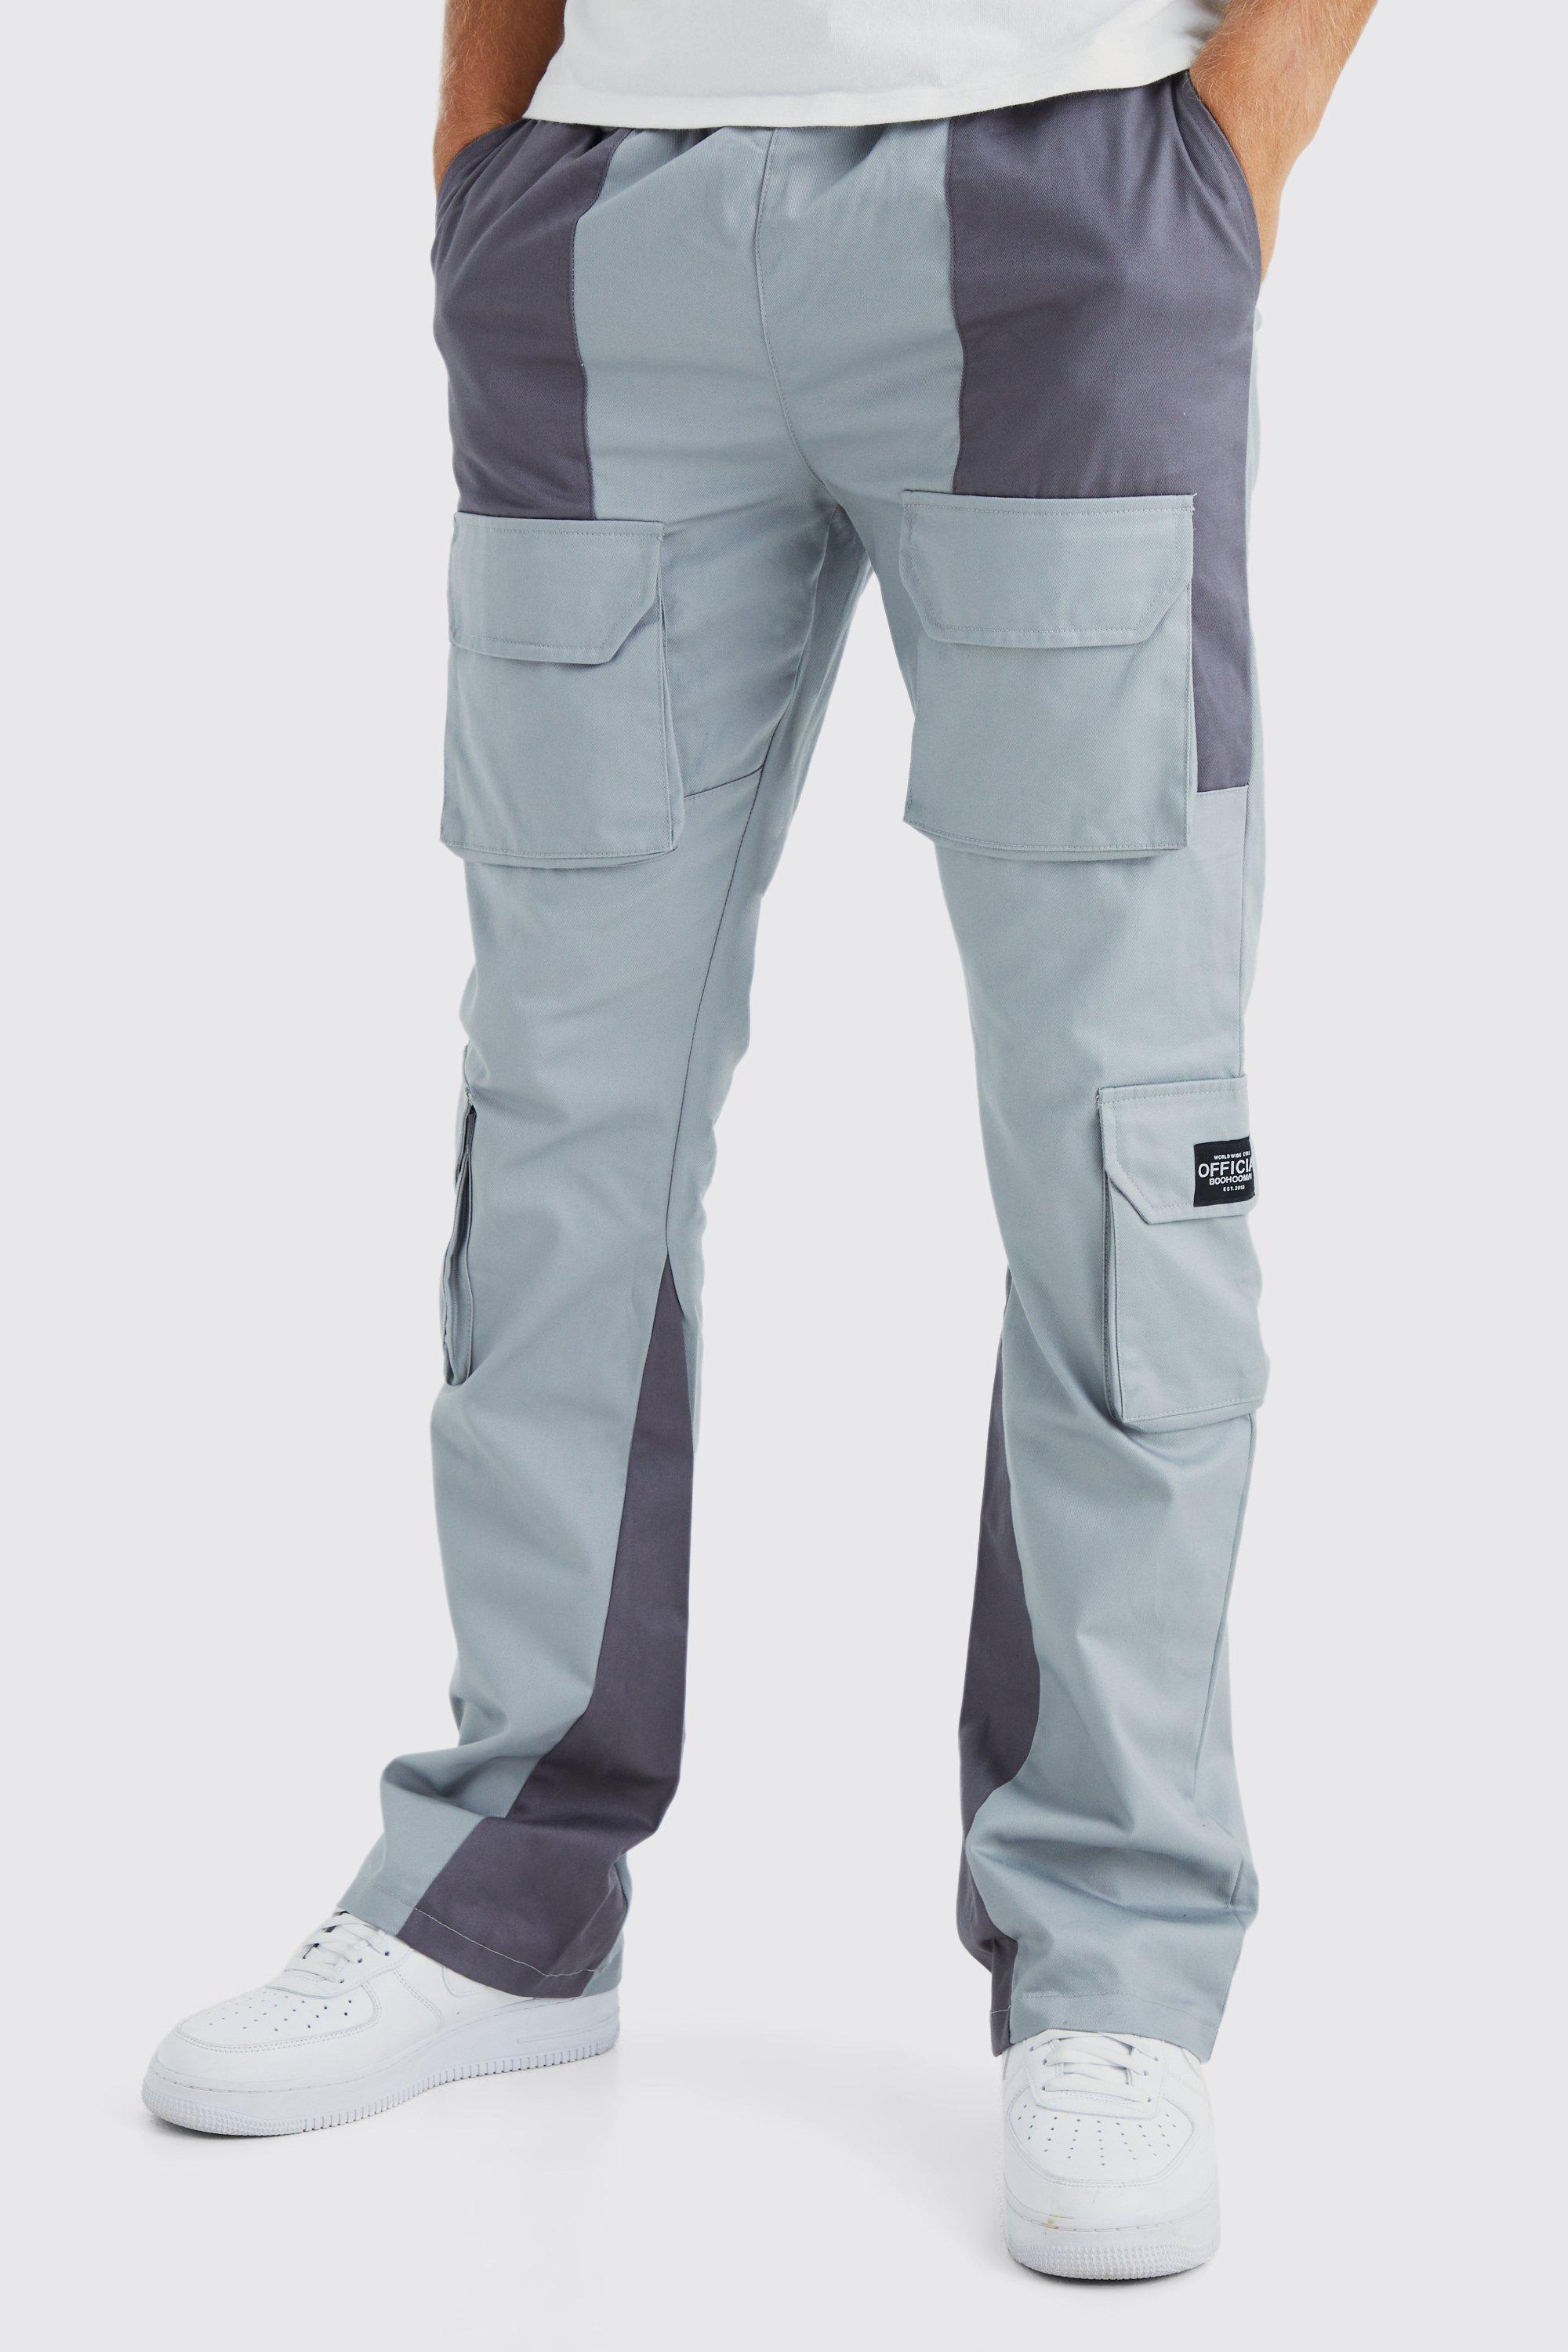 tall - pantalon cargo color block homme - gris - 36, gris